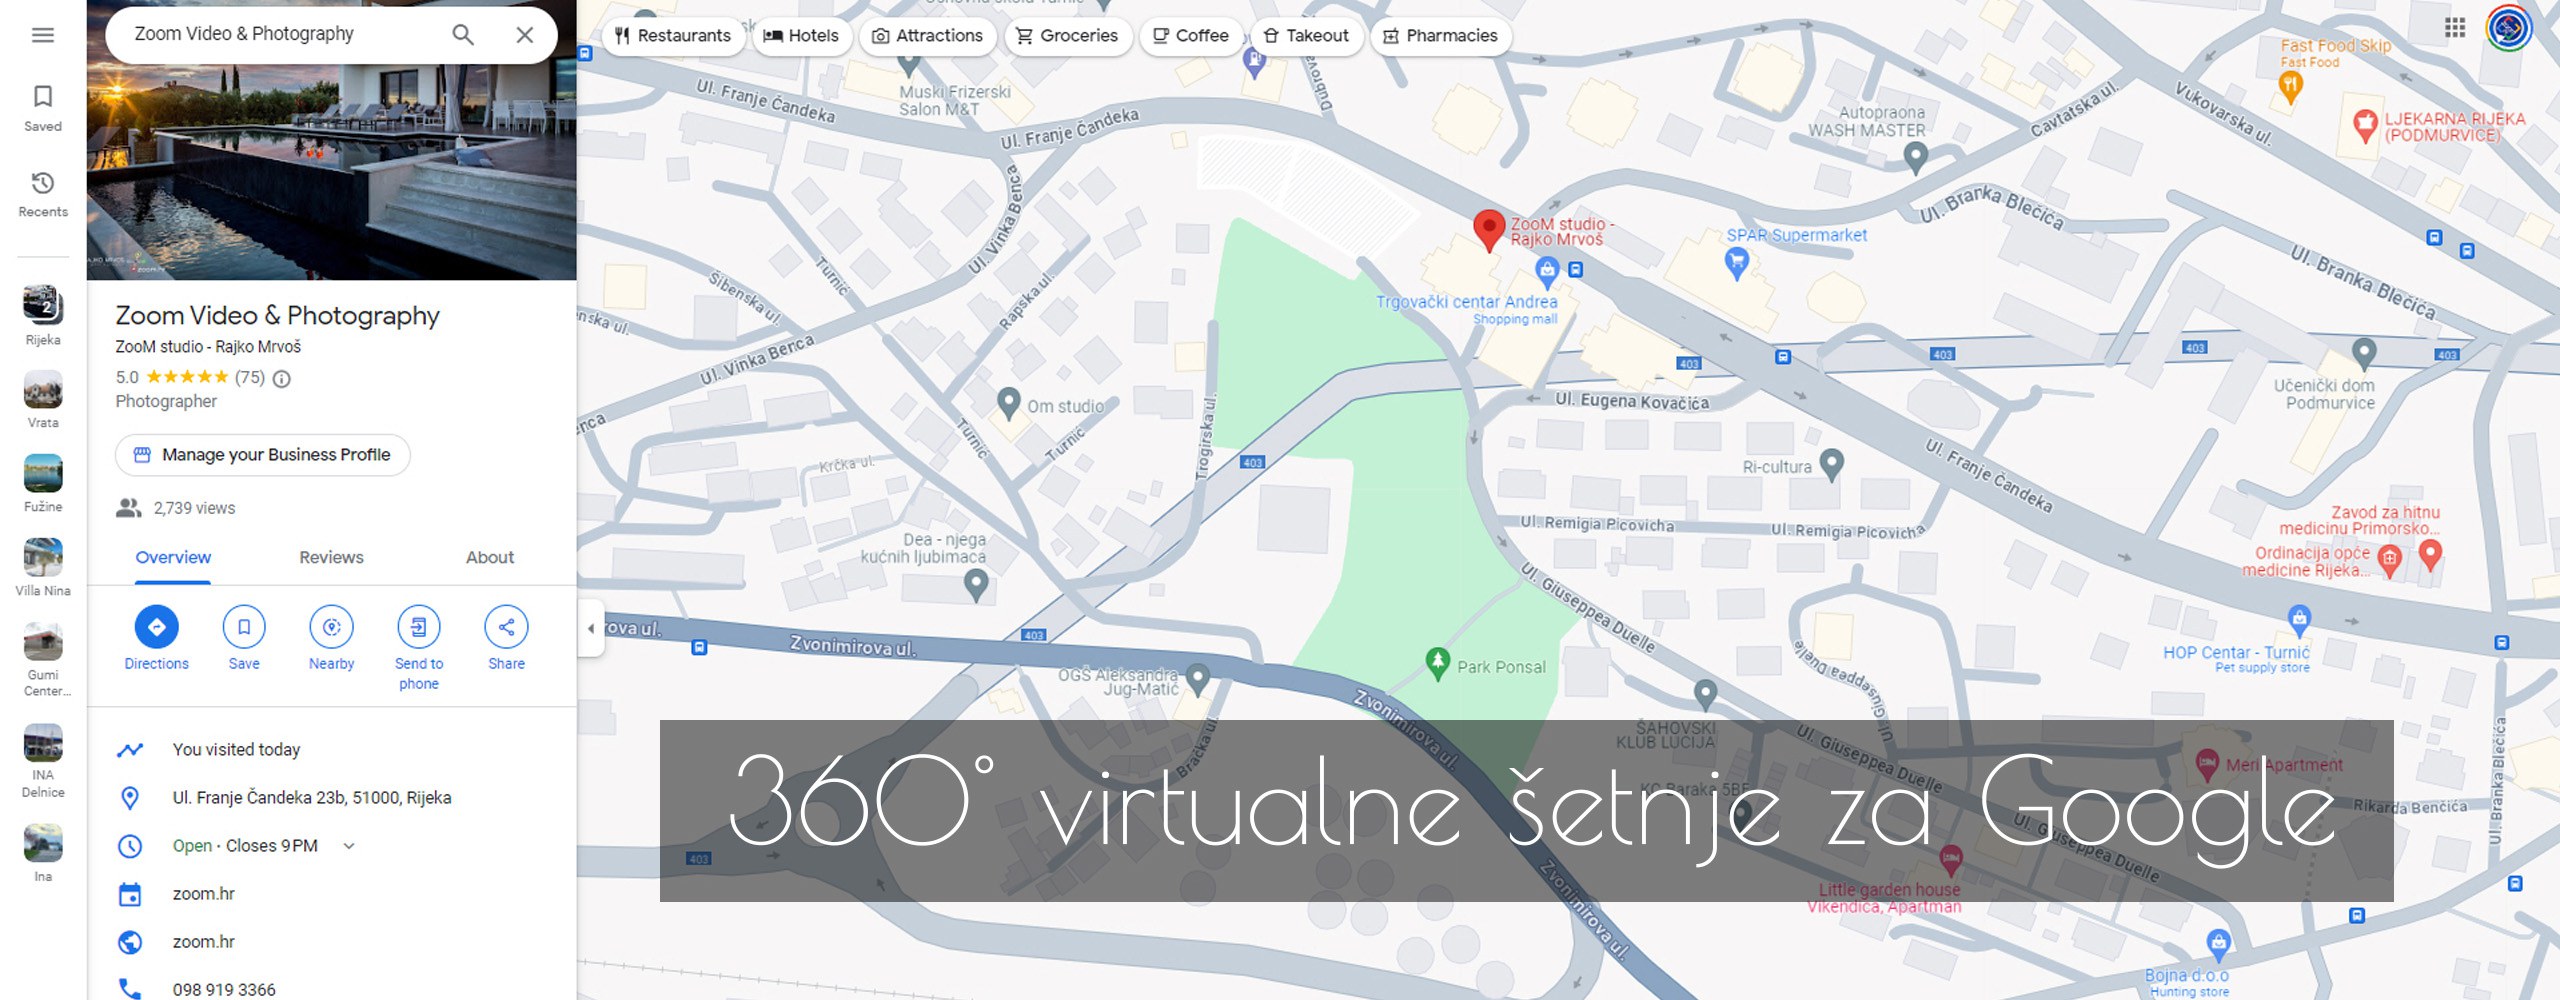 360 virtualna šetnja za Google